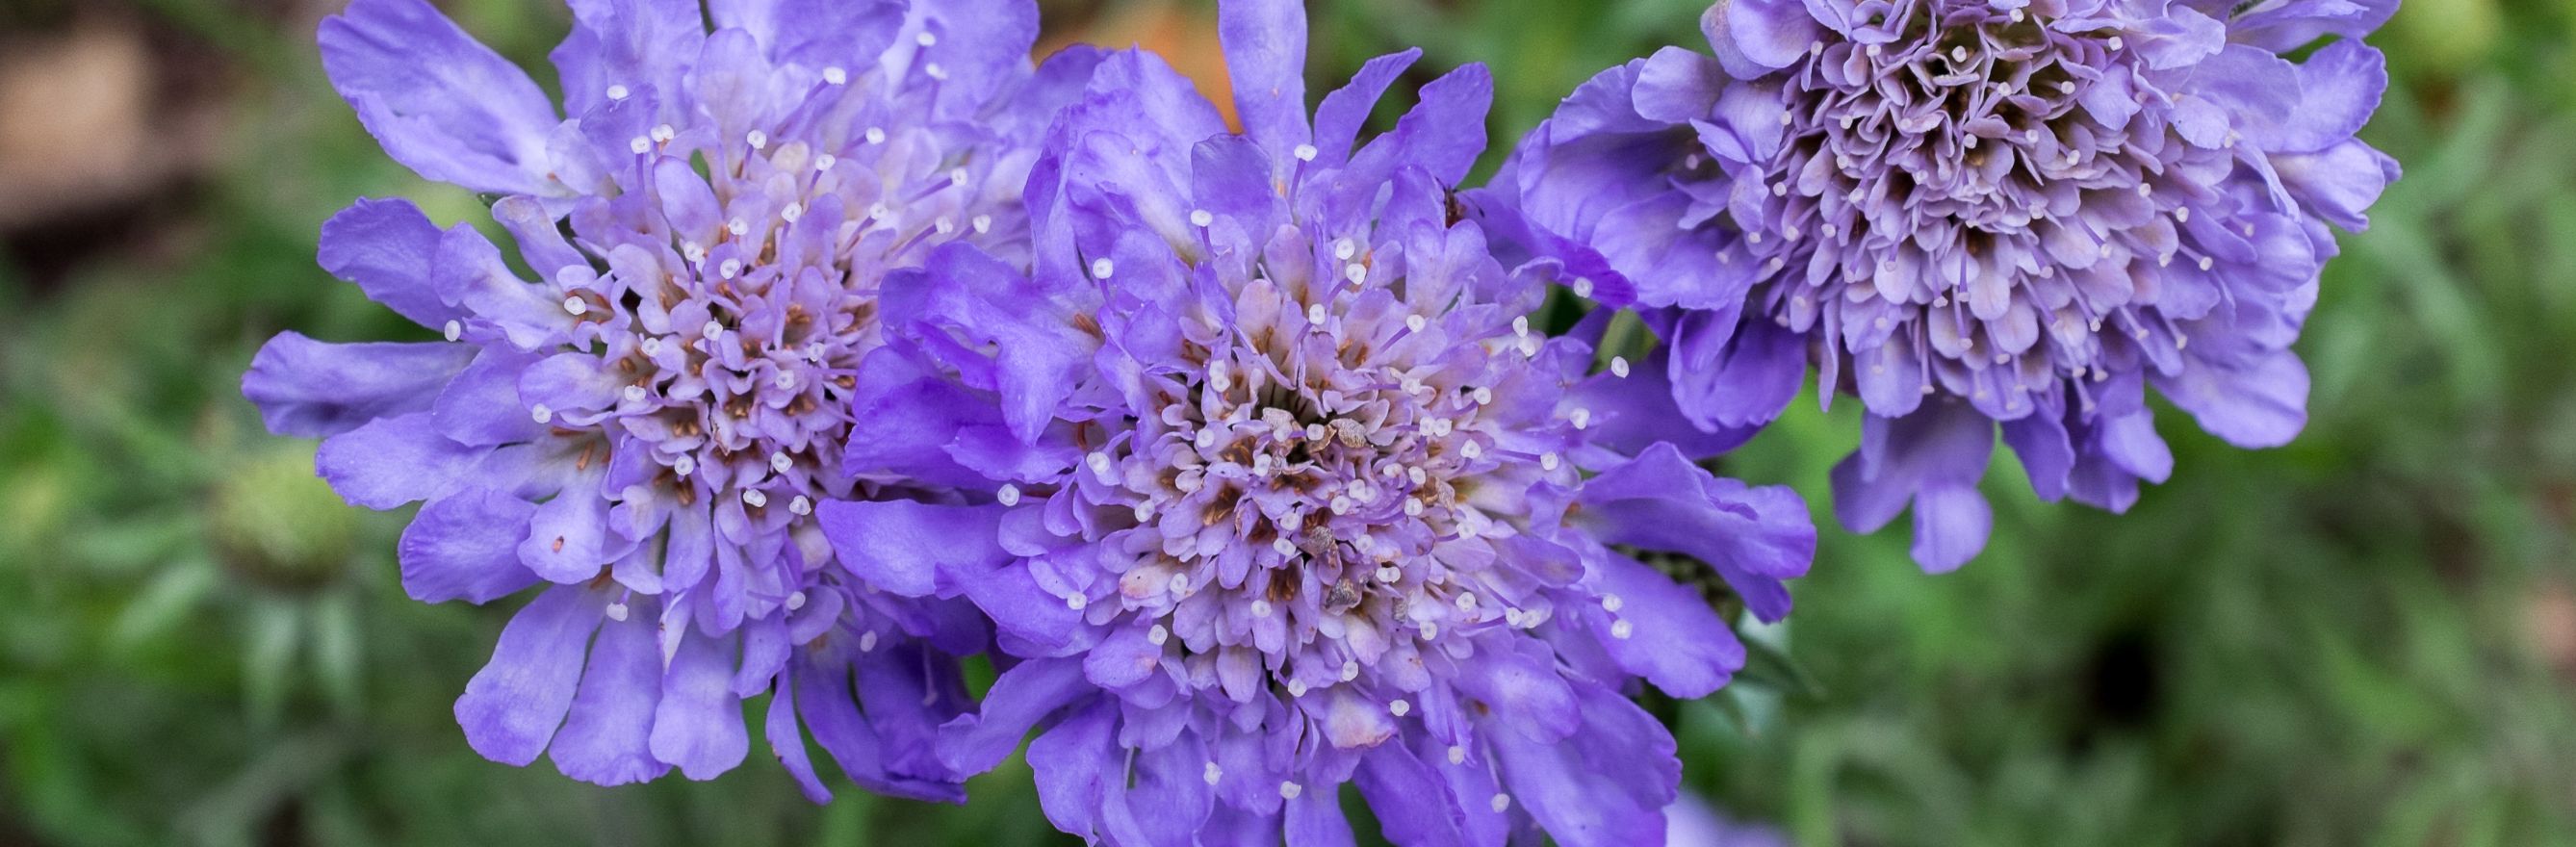 Sacbieuses jardin violet